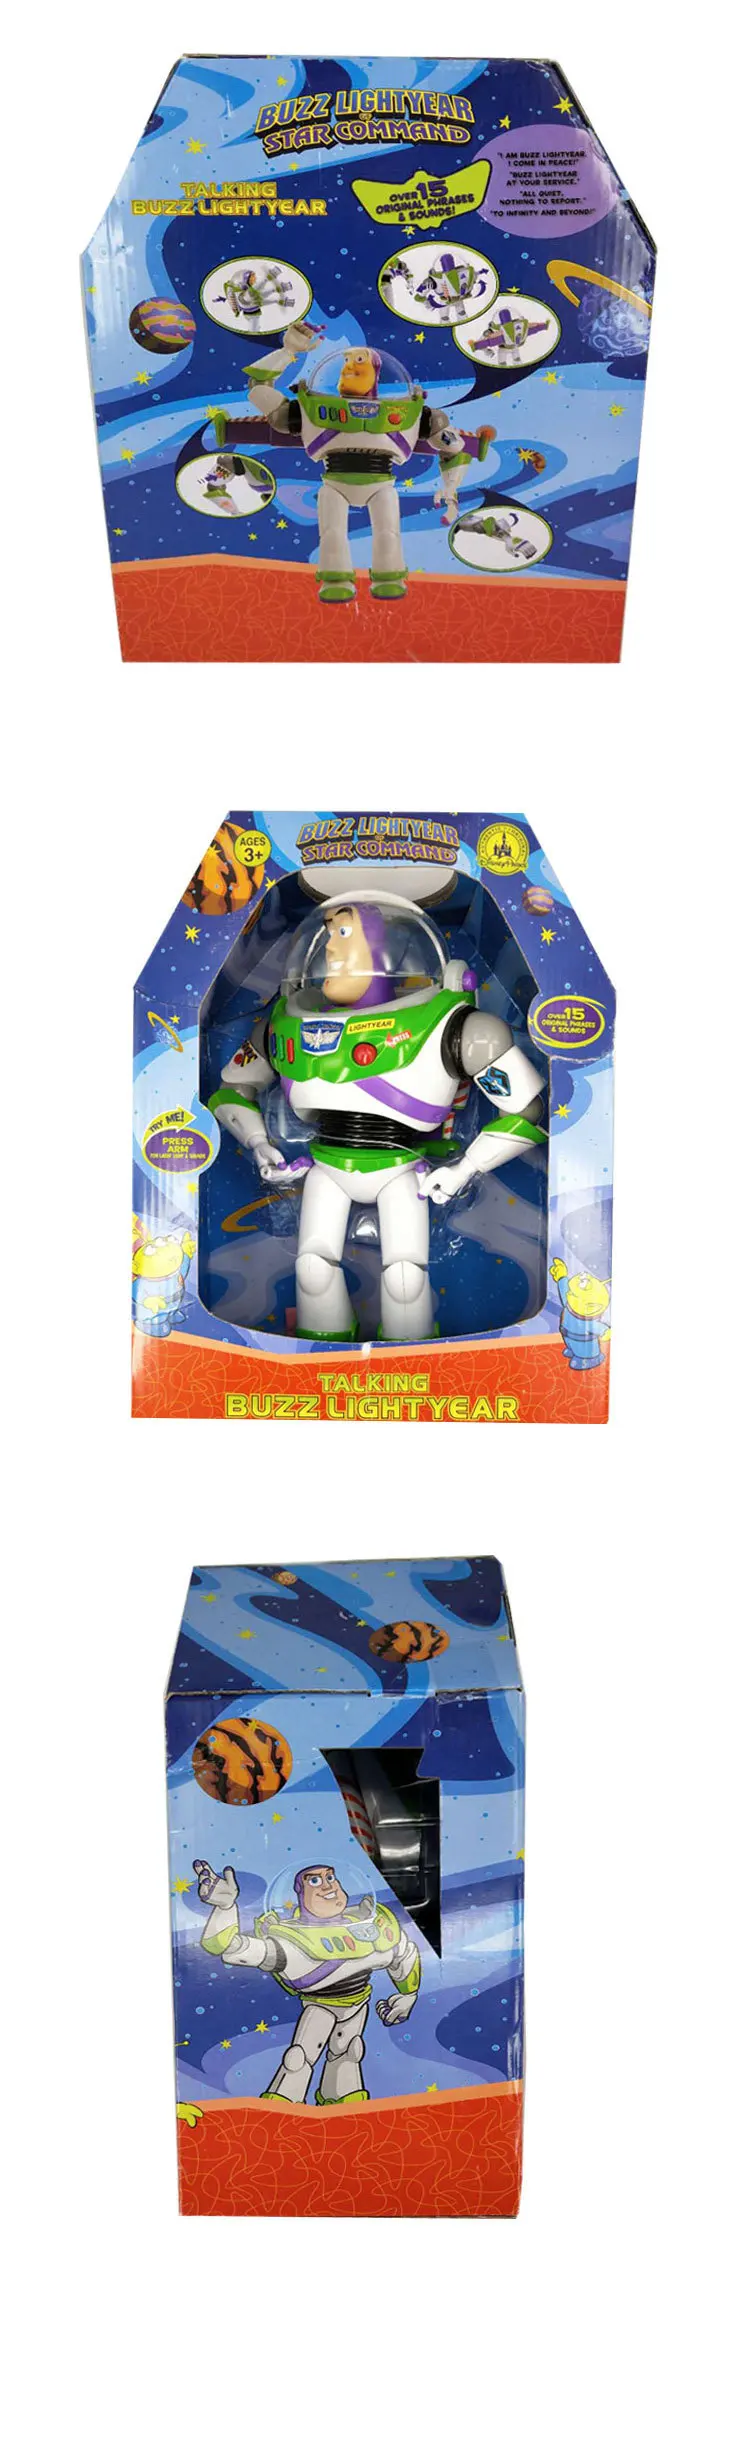 Игрушка "Дисней" История 4 игрушки Pixar Buzz Lightyear Can talk Woody Forky Alien Аниме Фигурки игрушки для детей подарок на день рождения